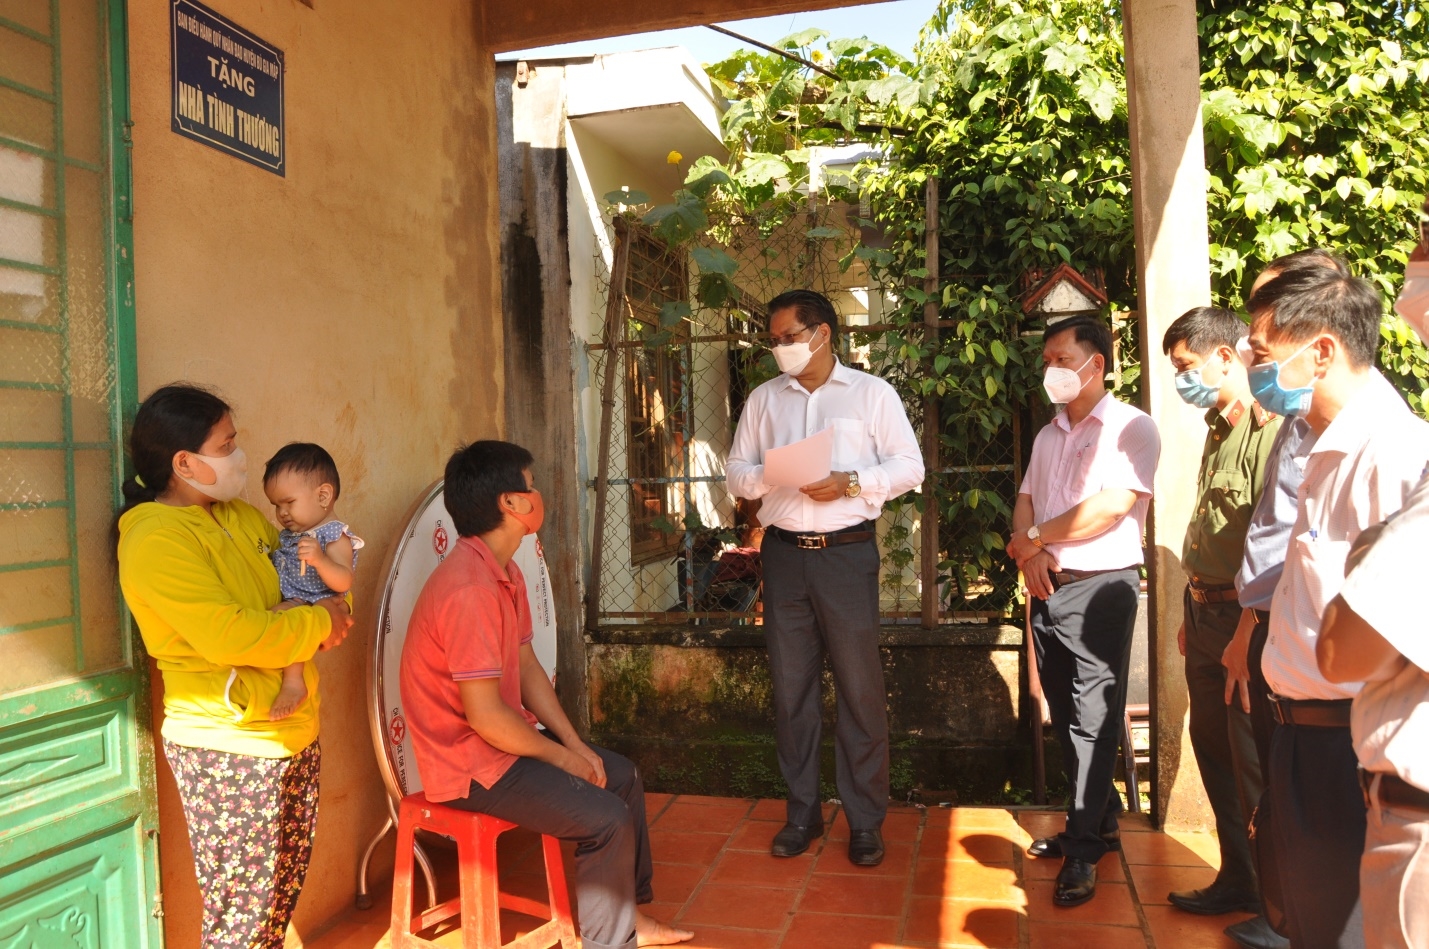 Lãnh đạo HĐND tỉnh Bình Phước đi khảo sát tại một hộ người DTTS ở xã Bù Gia Mập, huyện Bù Gia Mập về tình trạng bán điều non, vay nặng lãi, lừa đảo cầm cố đất, bán đất vùng đồng bào DTTS trên địa bàn